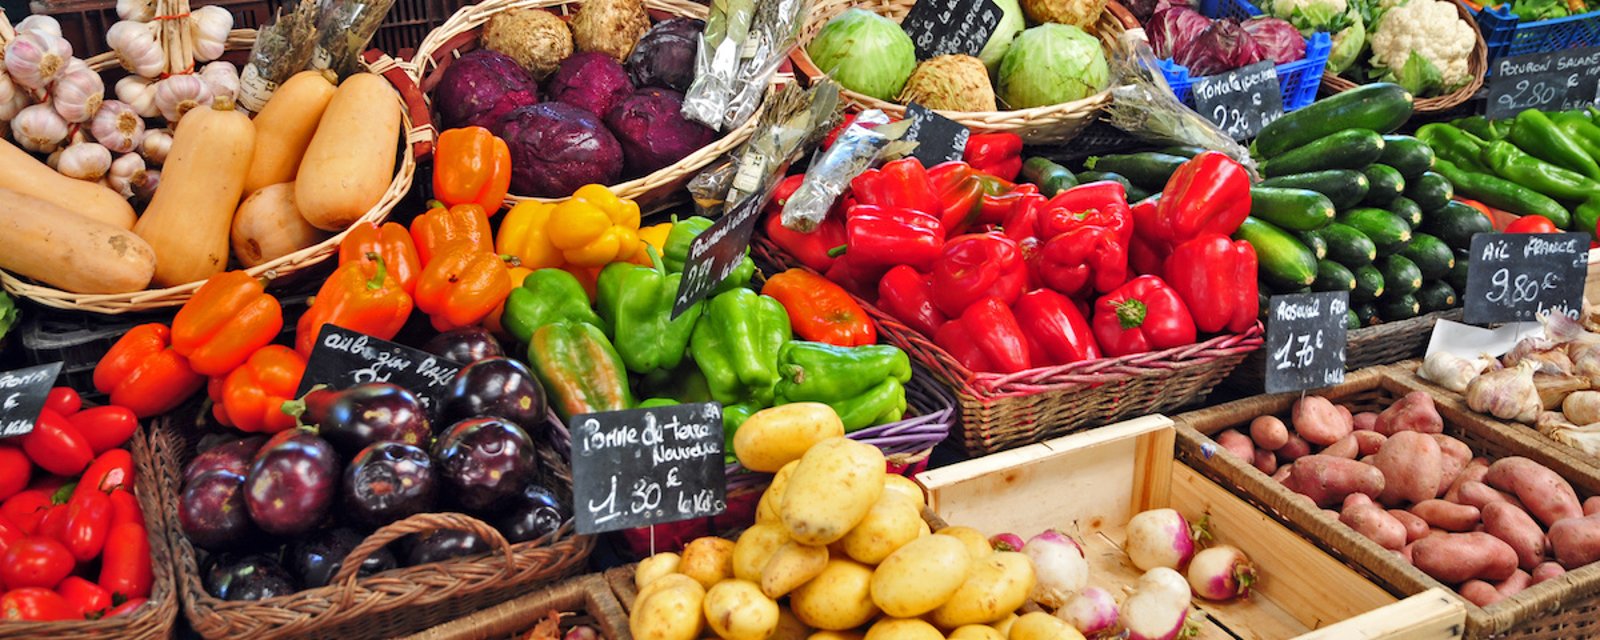 Trucs pour éviter le plus possible les pesticides dans les fruits et légumes